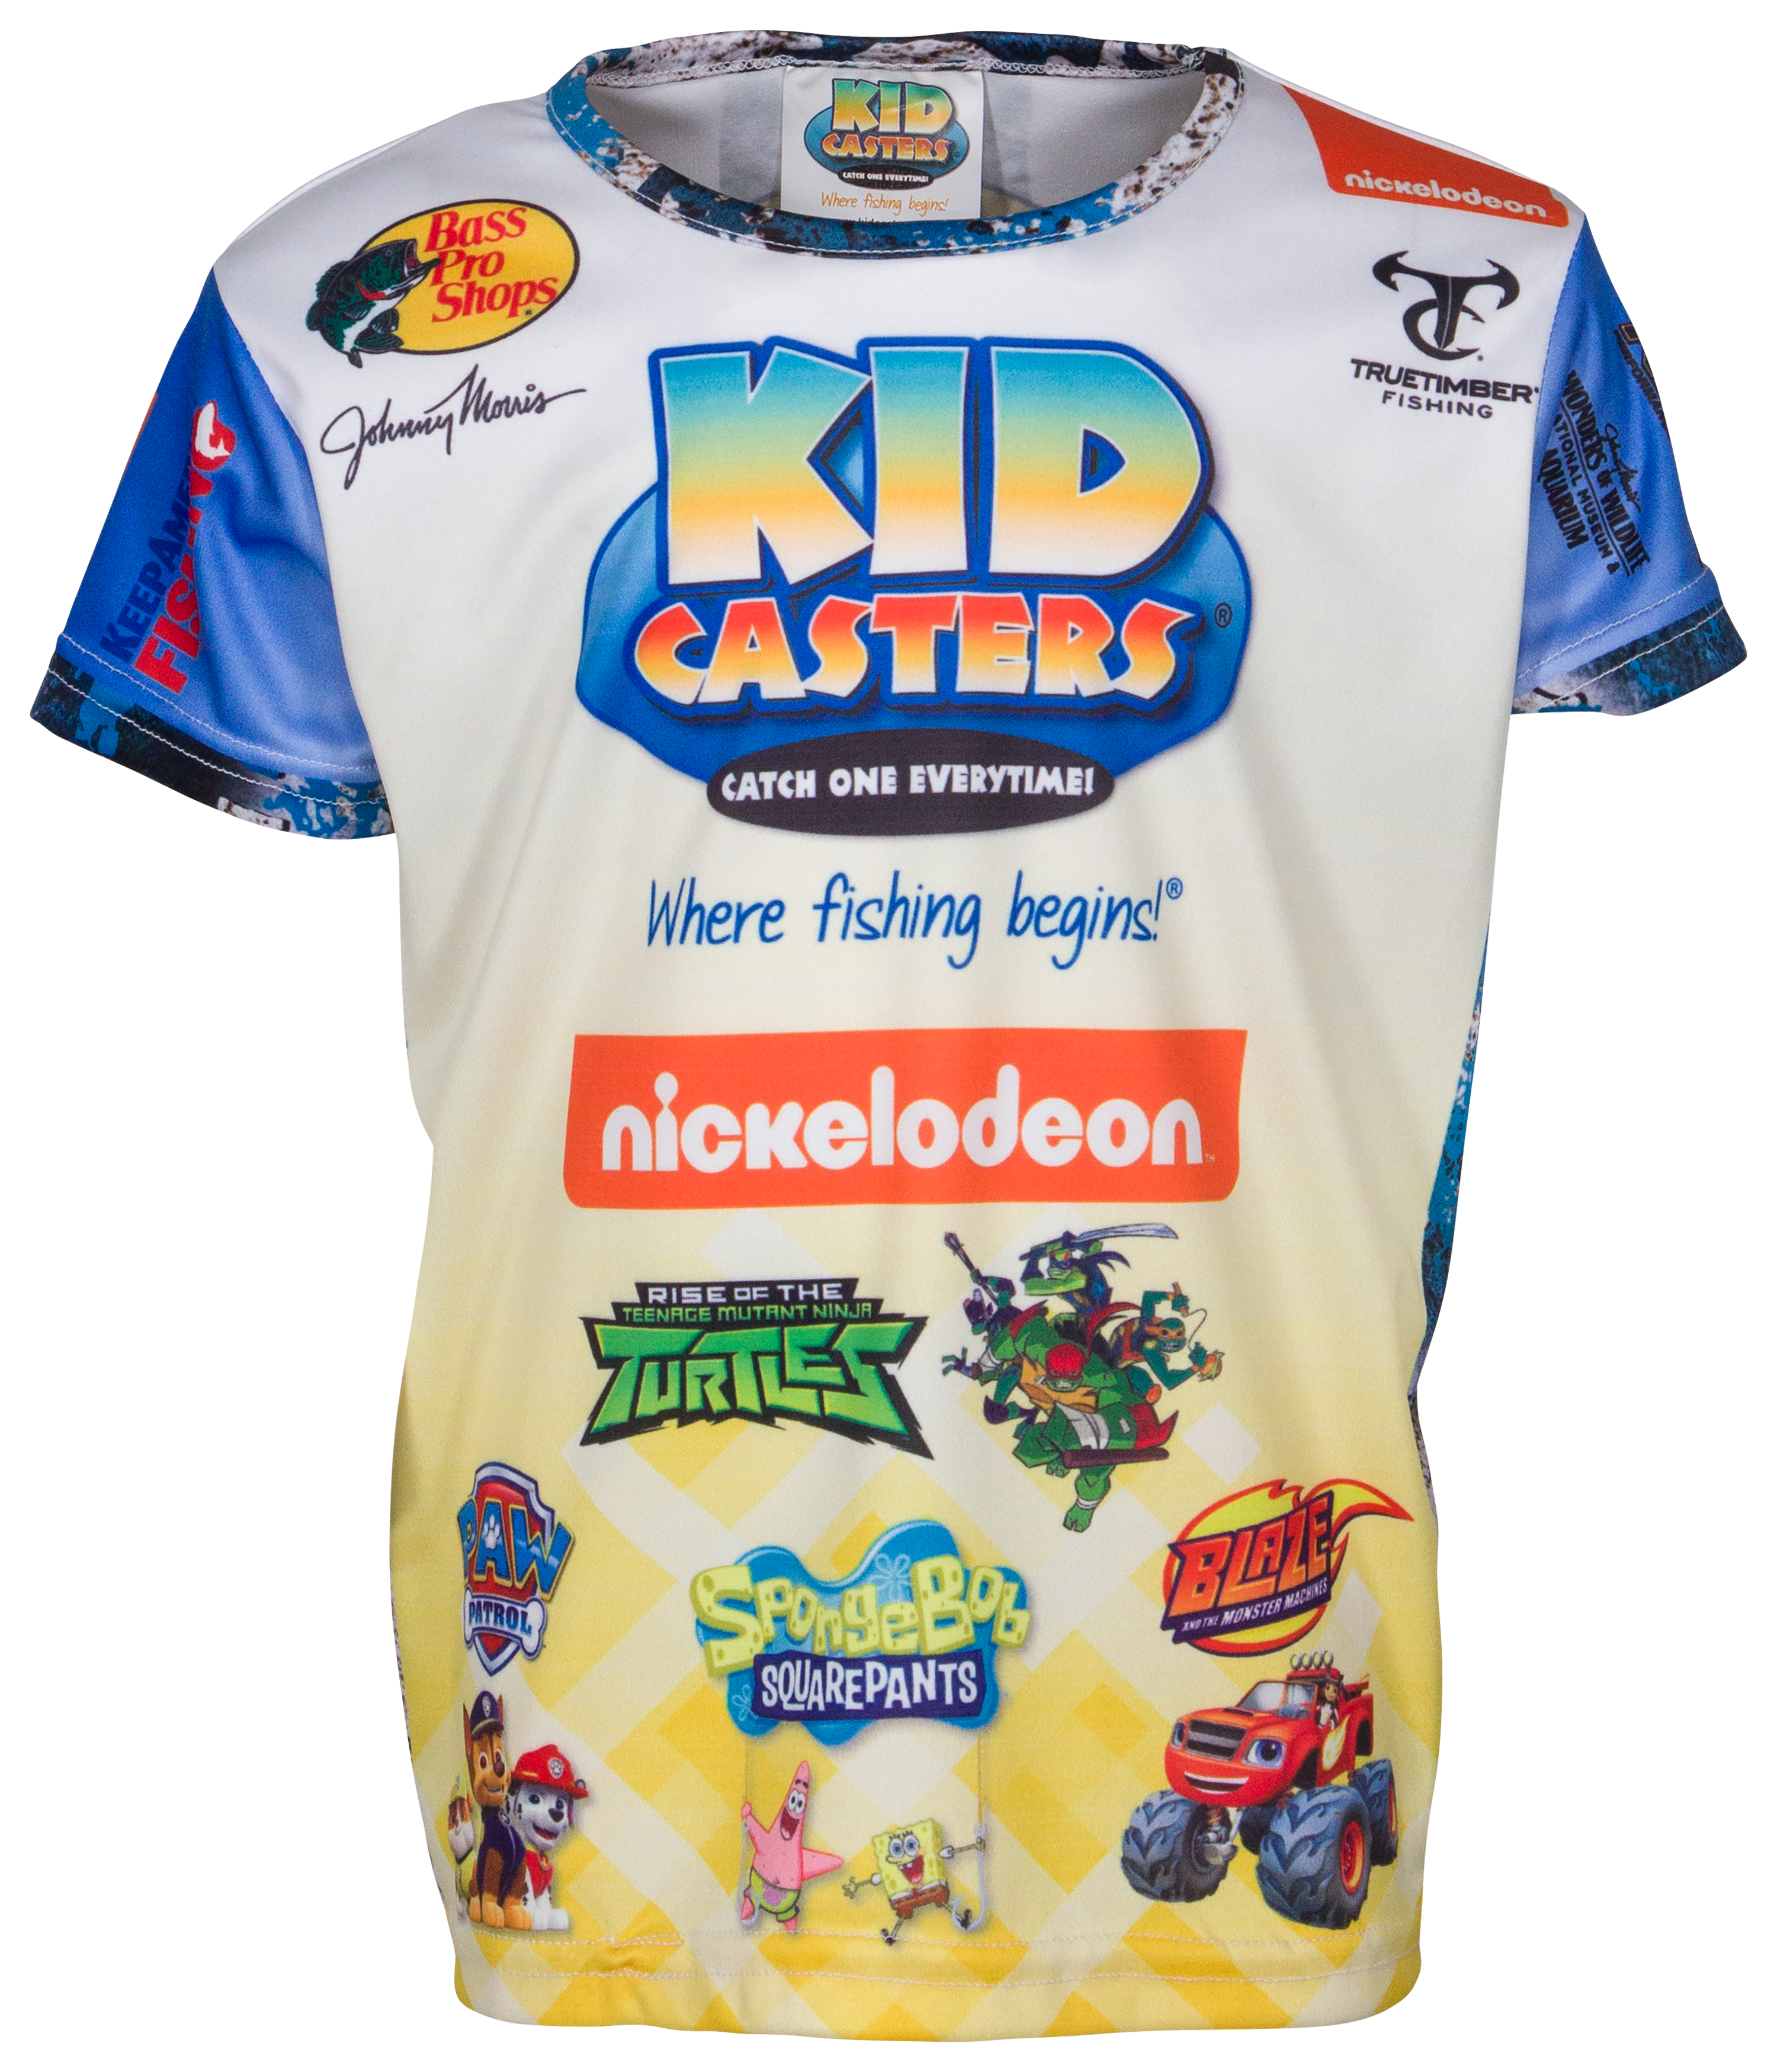 Catch & Release - Kids Fishing Shirt